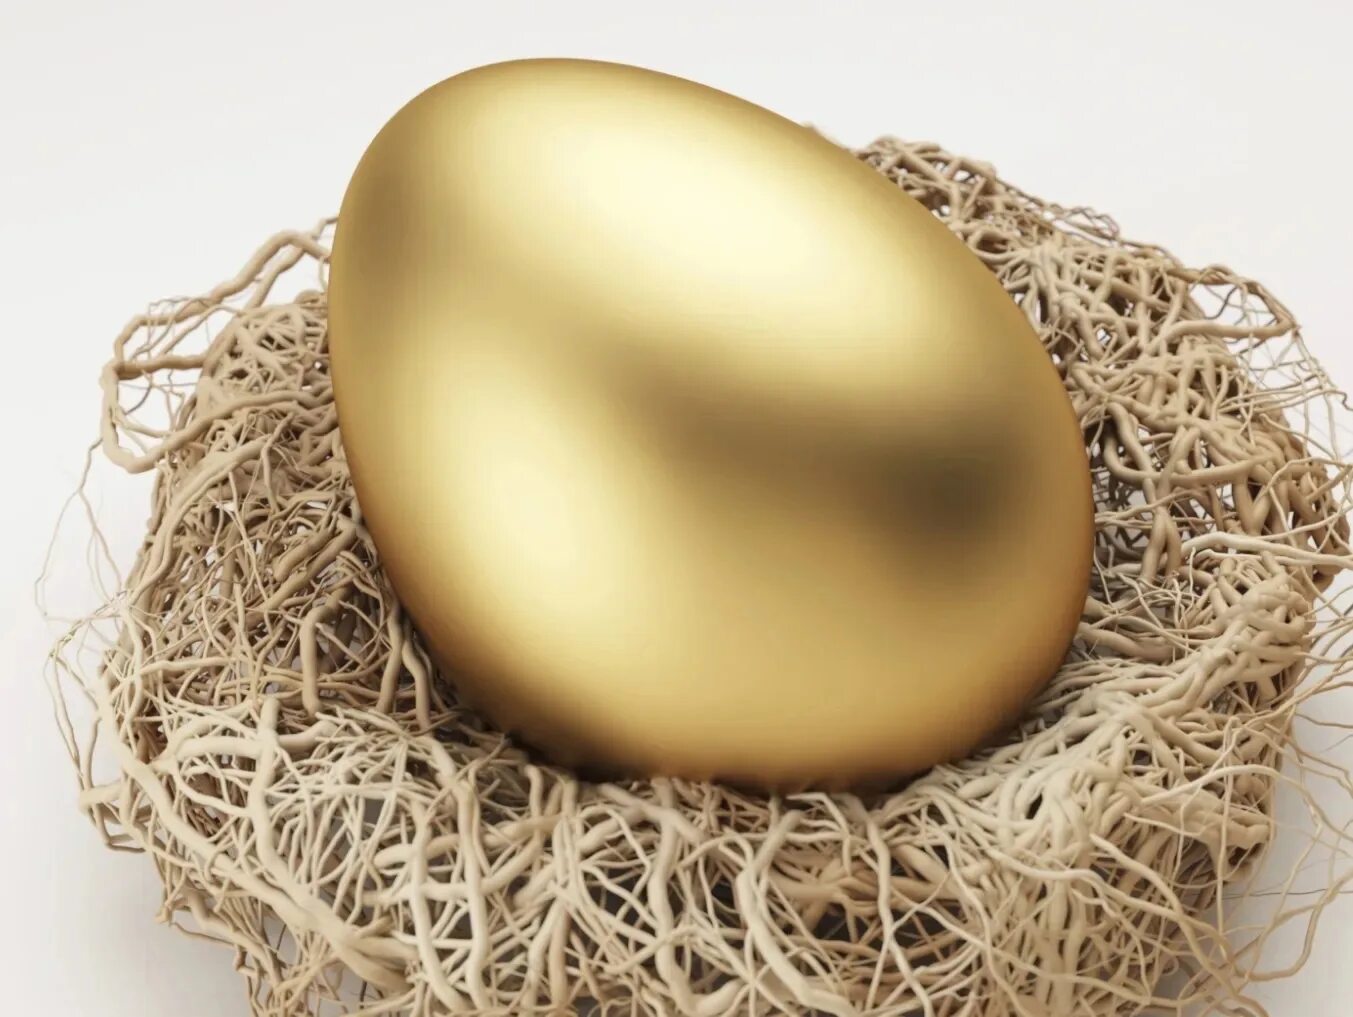 Золотое яйцо курочки Рябы. Золотое яйцо из сказки Курочка Ряба. Золотое яйцо из курочки Рябы. Сказка Курочка Ряба золотое яйцо. Золотое яйцо питалось кровью